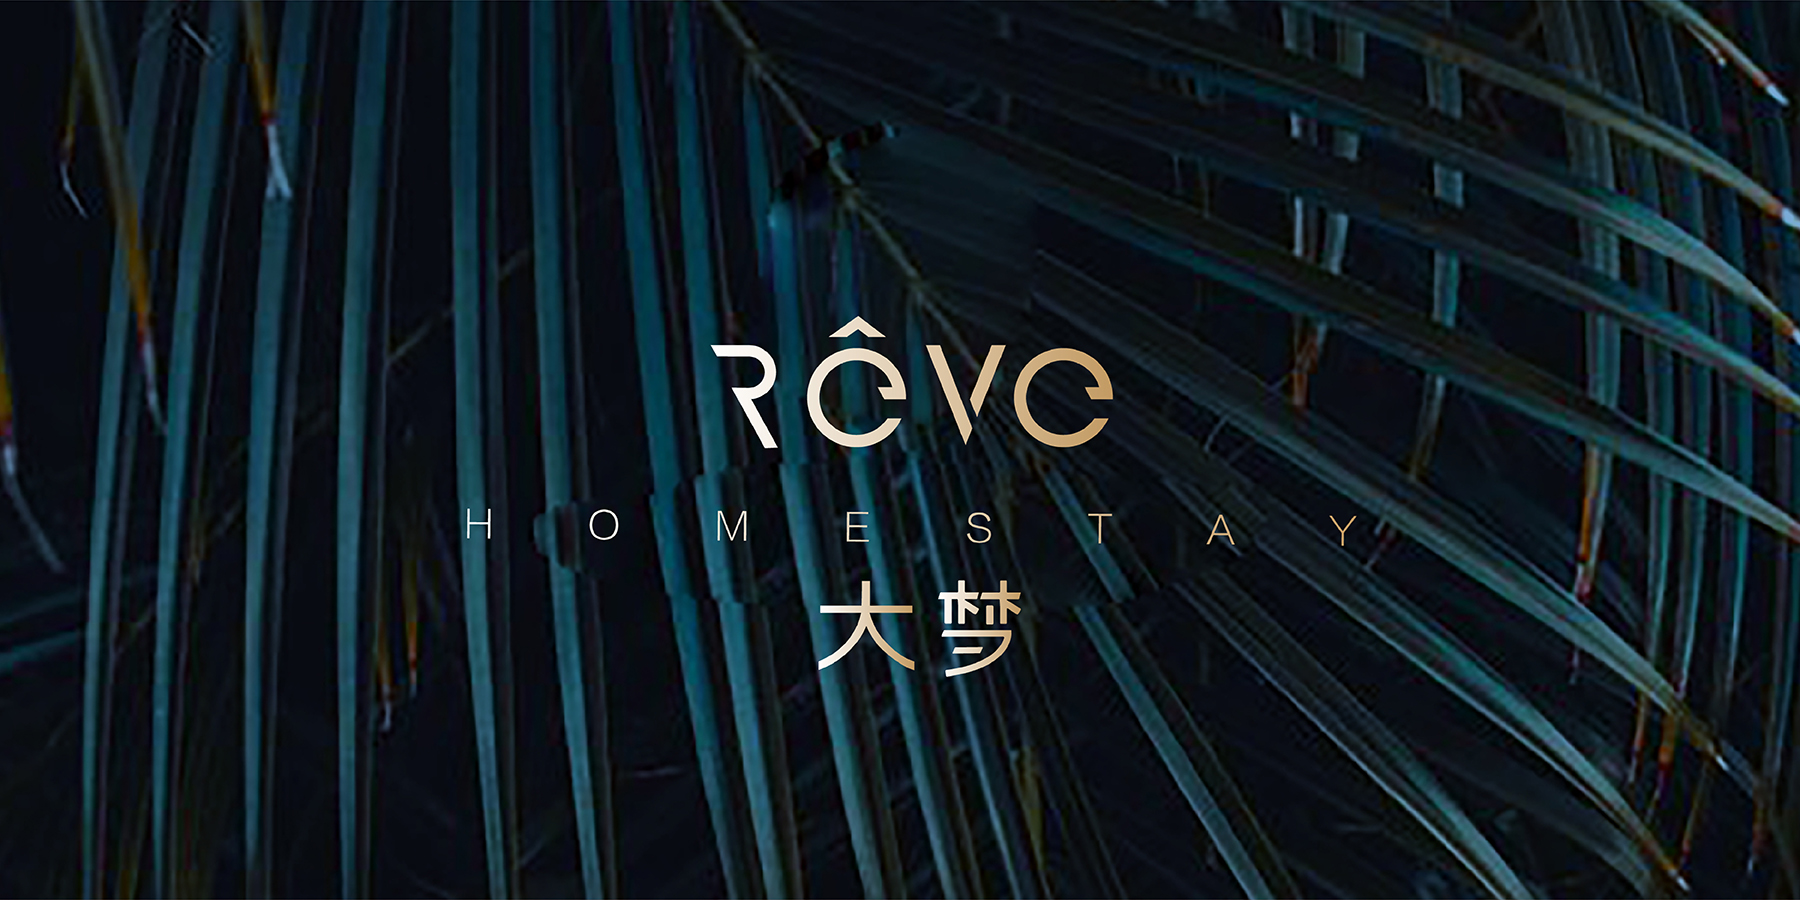 大梦REVE民宿-logo设计-VI设计-品牌设计